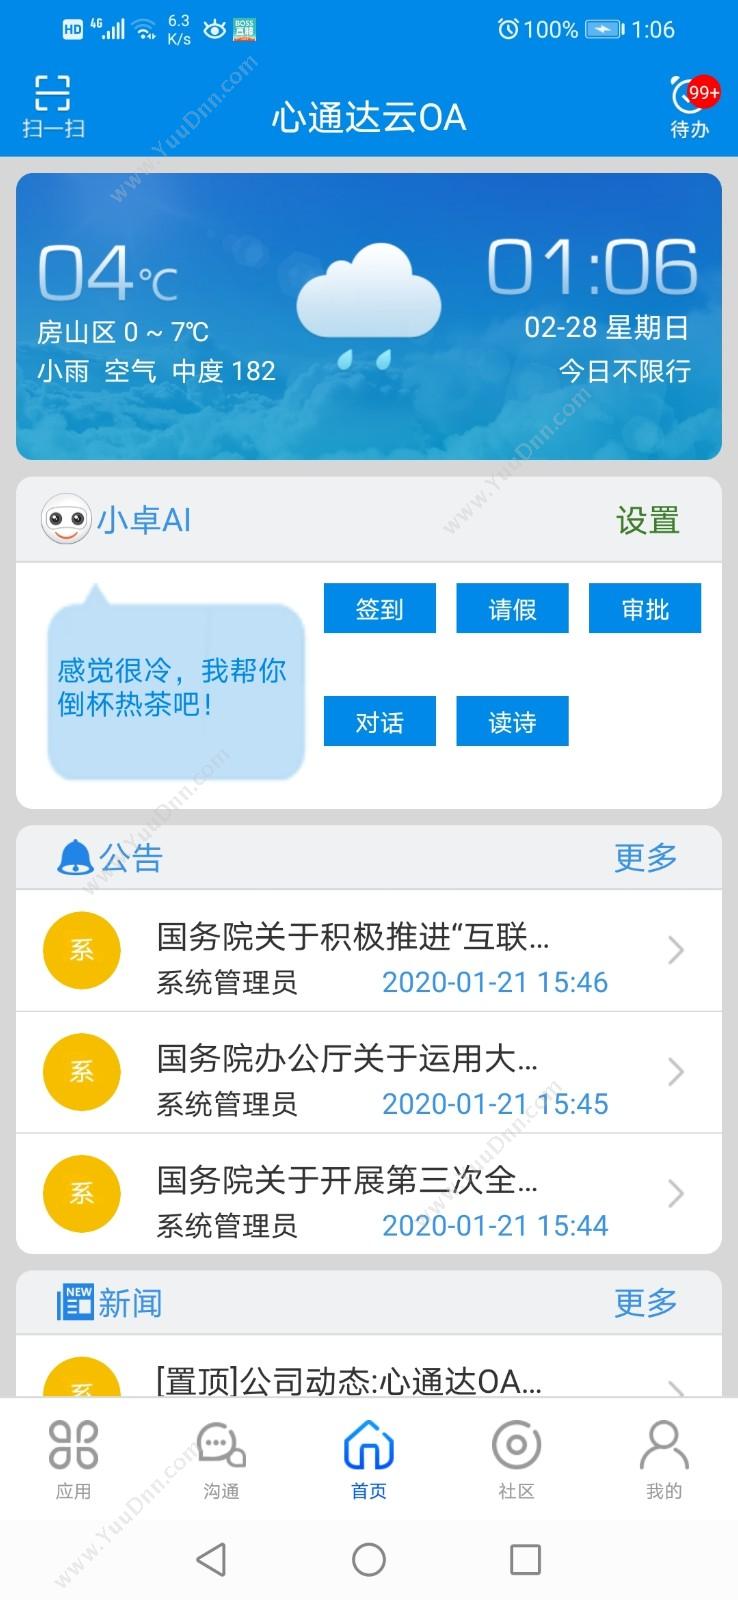 北京高速波软件有限公司 心通达OA智慧办公系统 APP 协同OA